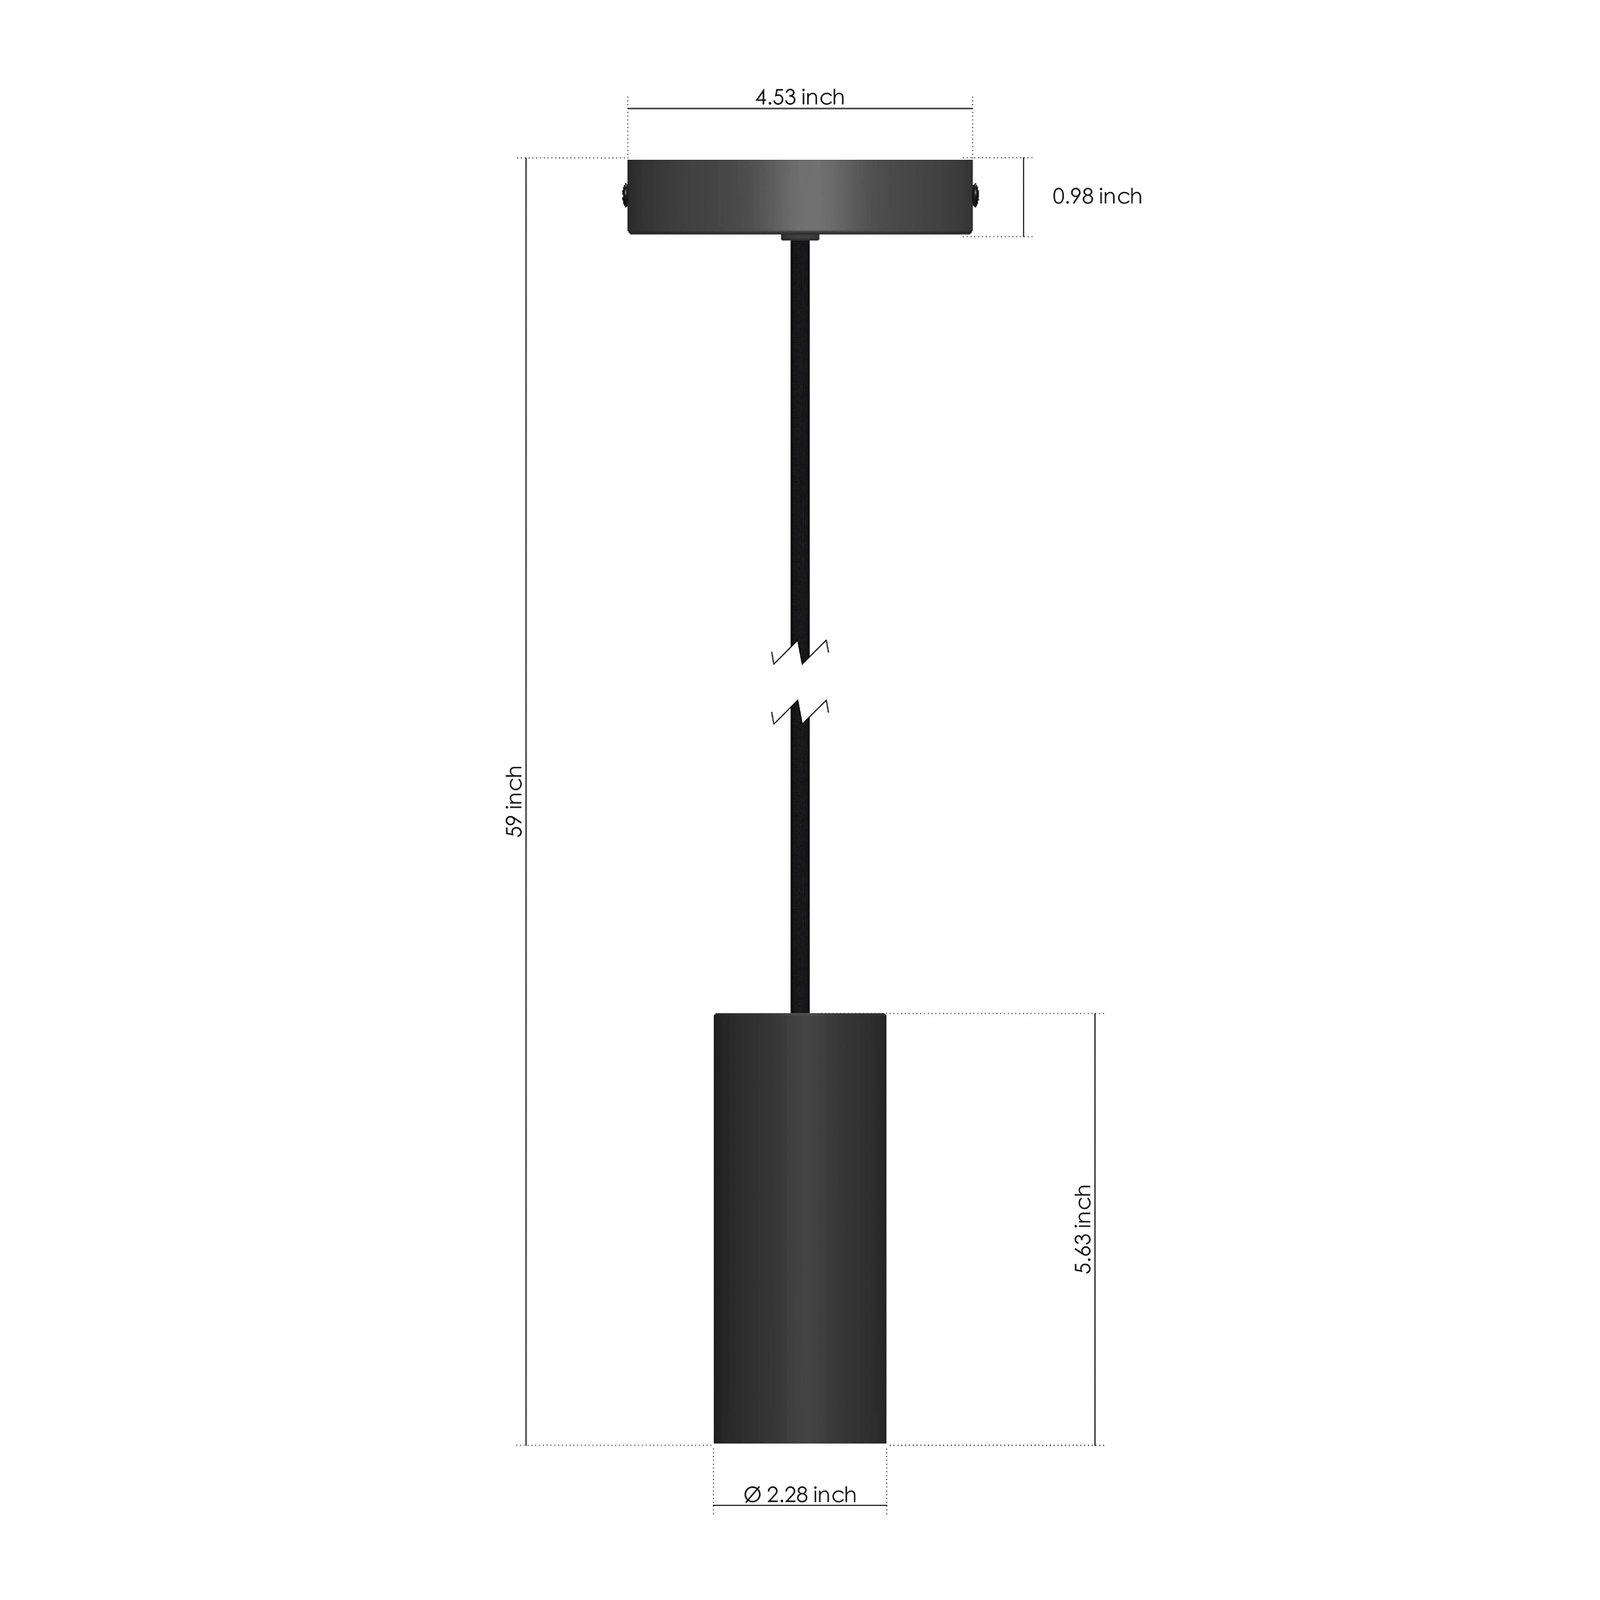 Philips Hue hanglamp, E27 fitting, 1-lamp, zwart